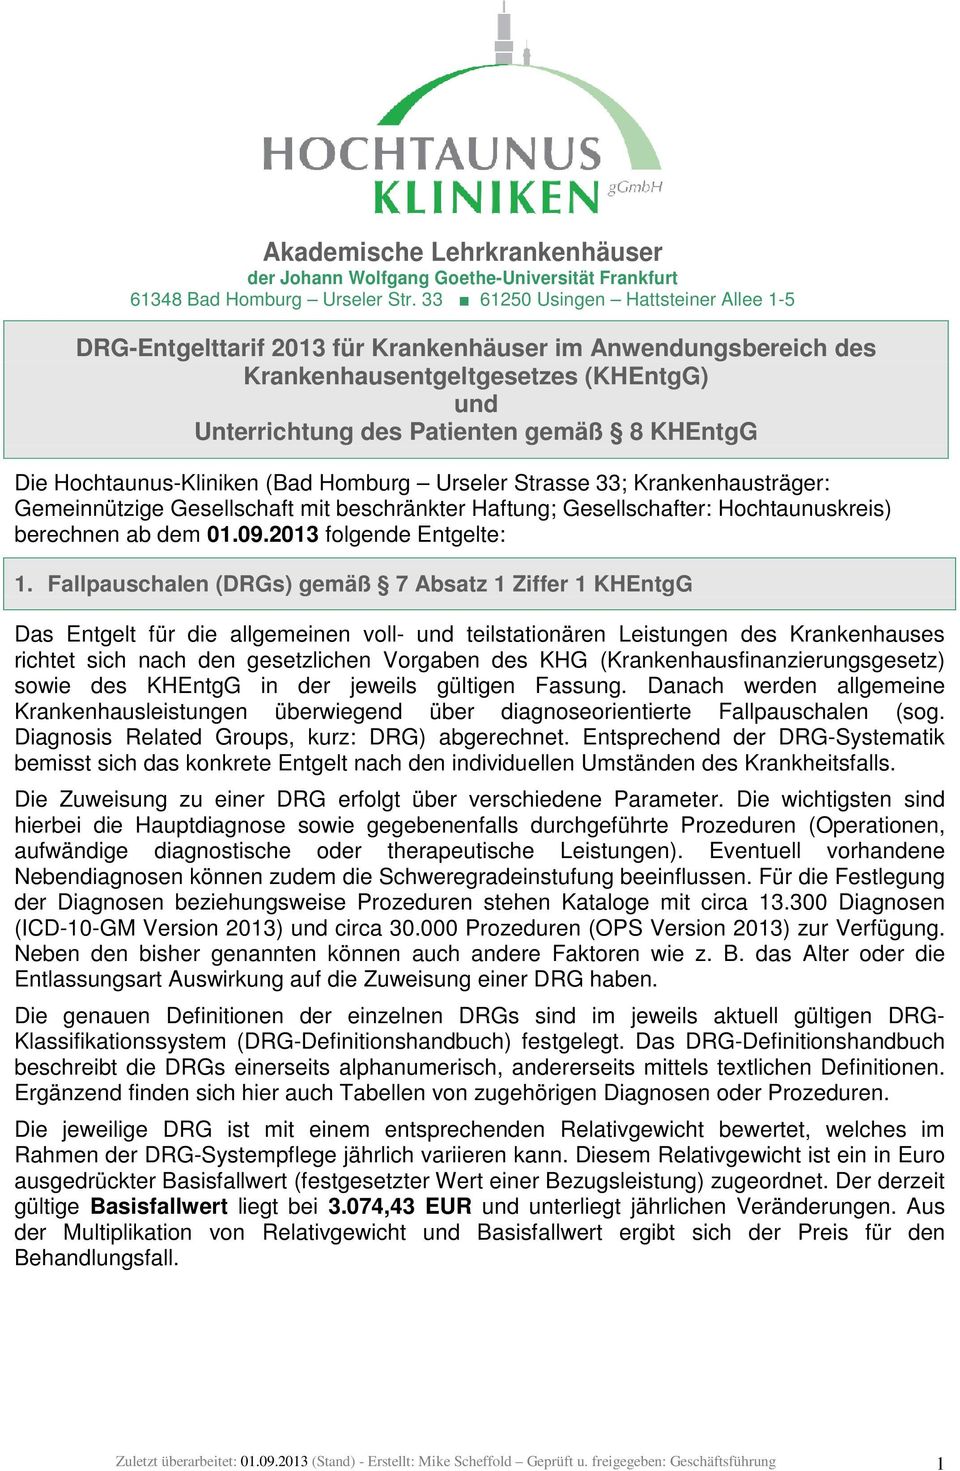 Hochtaunus-Kliniken (Bad Homburg Urseler Strasse 33; Krankenhausträger: Gemeinnützige Gesellschaft mit beschränkter Haftung; Gesellschafter: Hochtaunuskreis) berechnen ab dem 01.09.